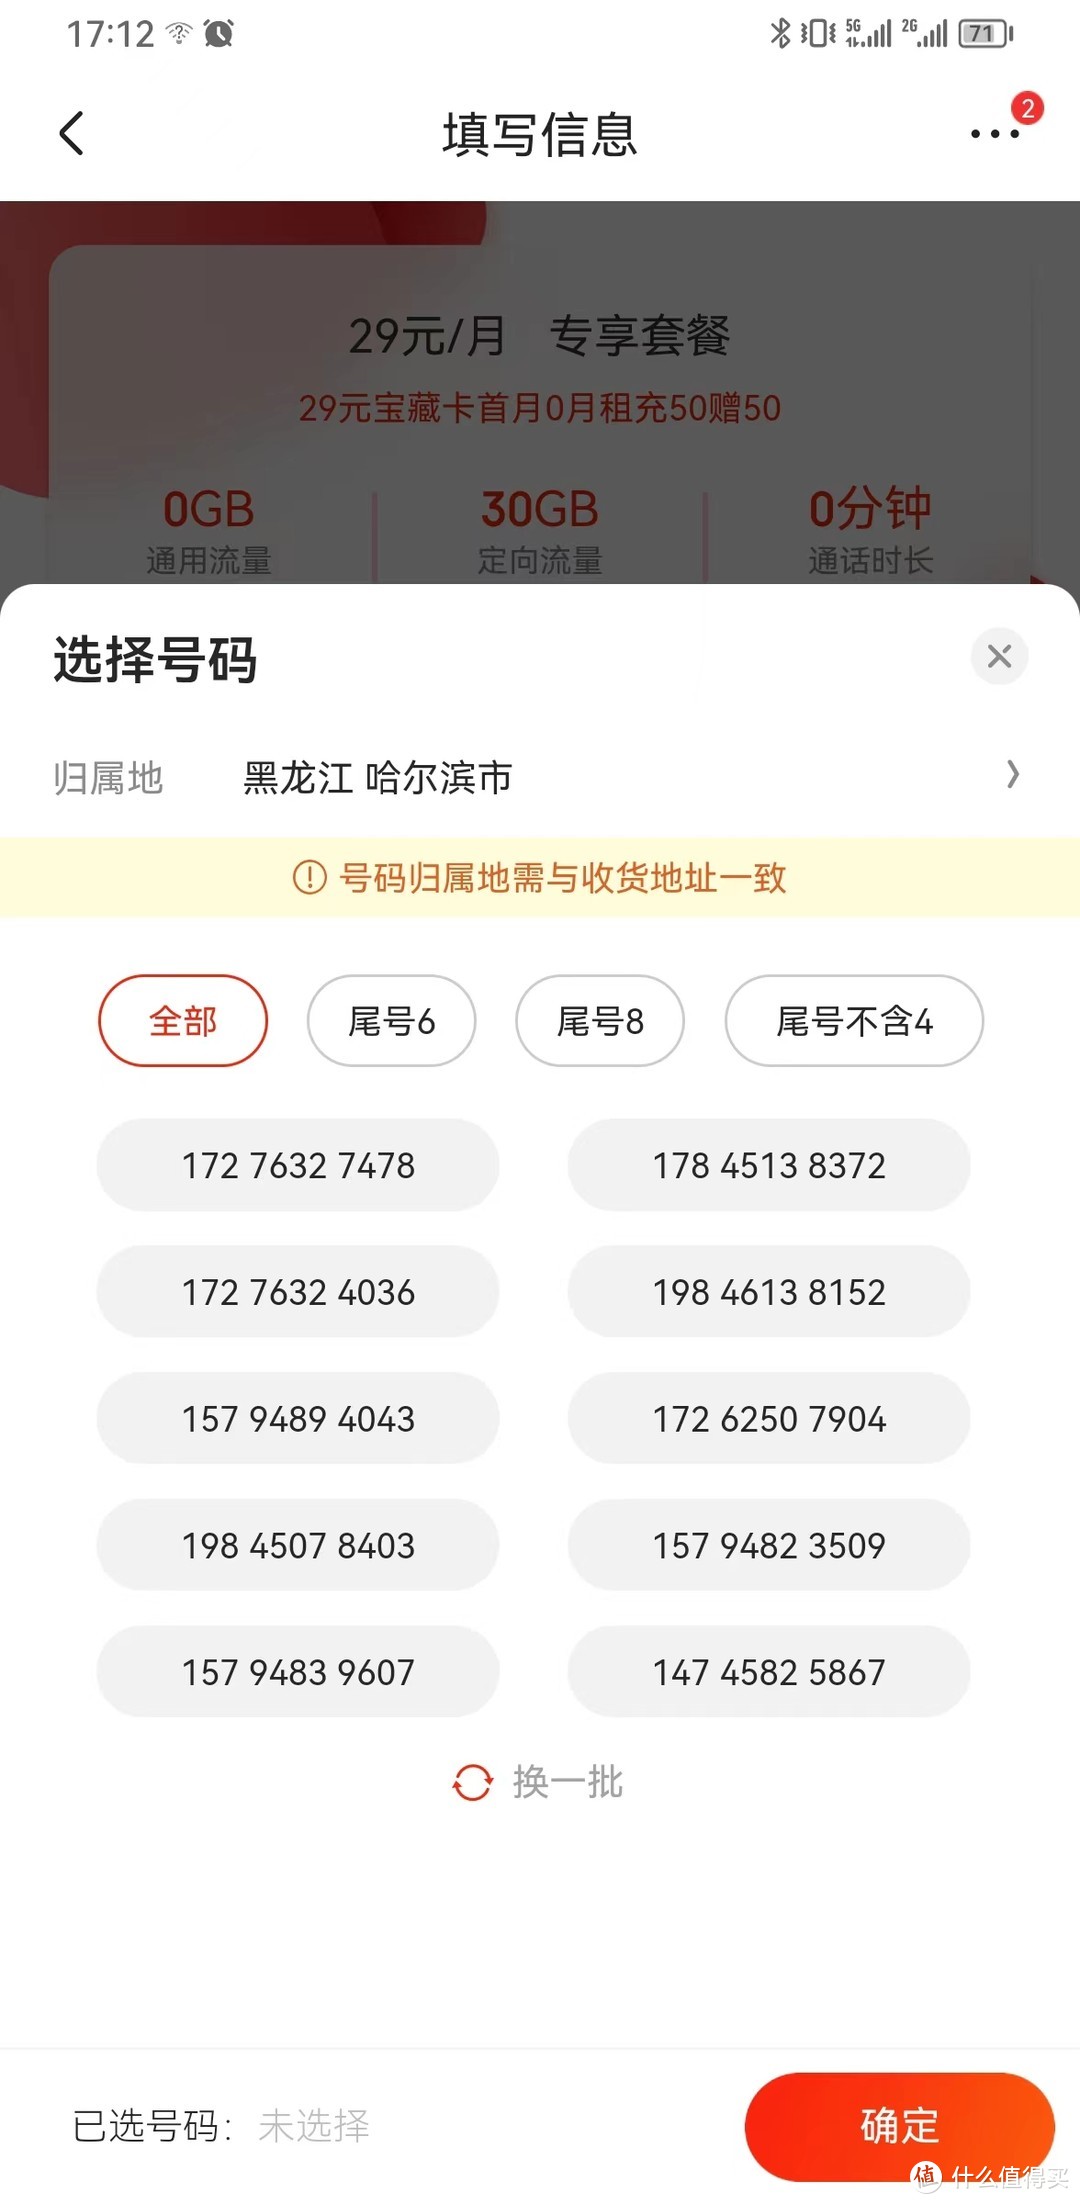 在手机上就可以办中国移动的手机卡，可以在线选号，选归属地了